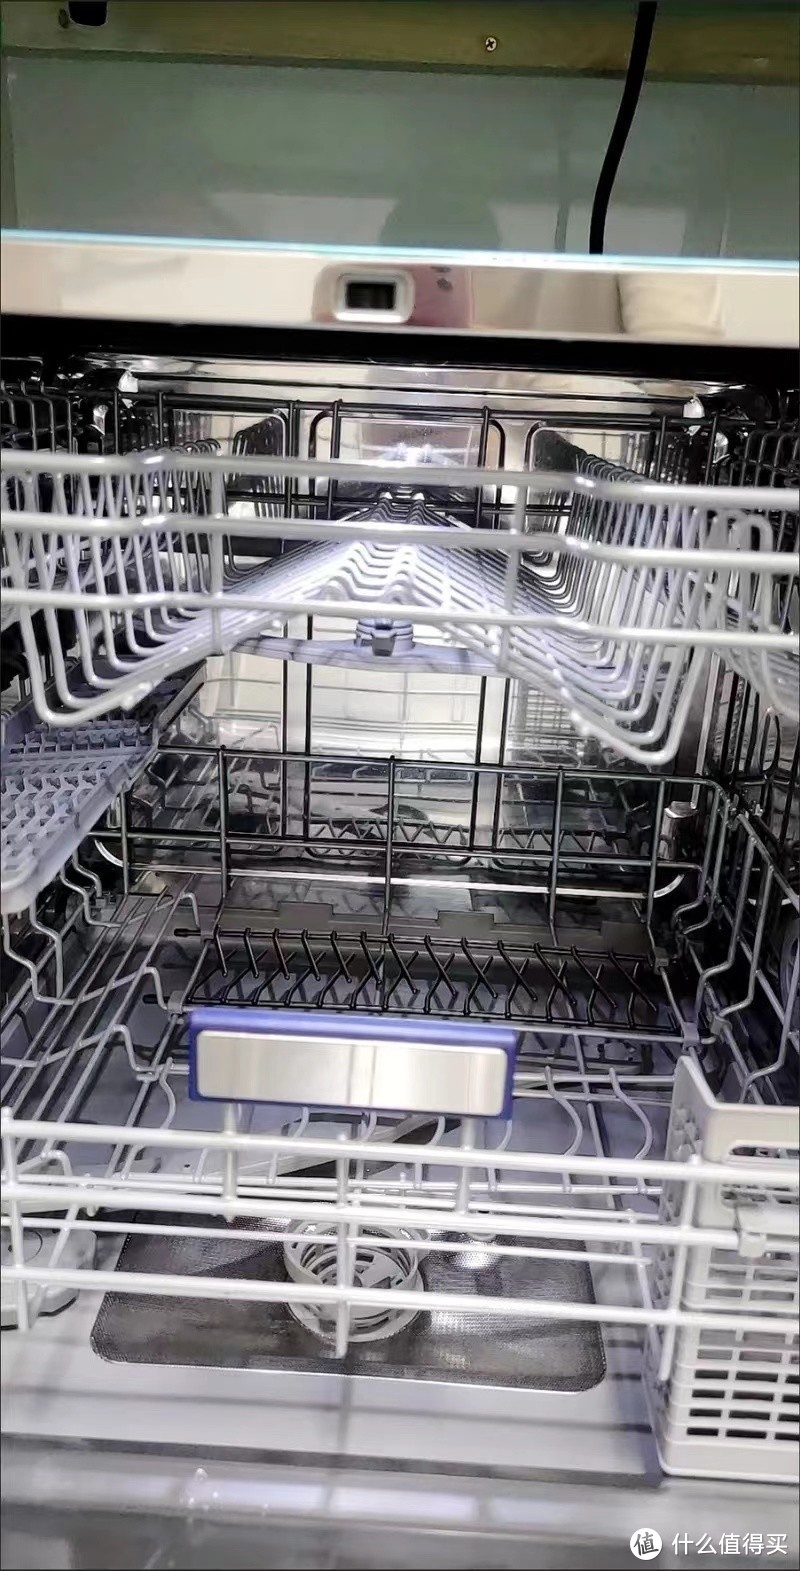 美的洗碗机——厨房清洁的智能伙伴